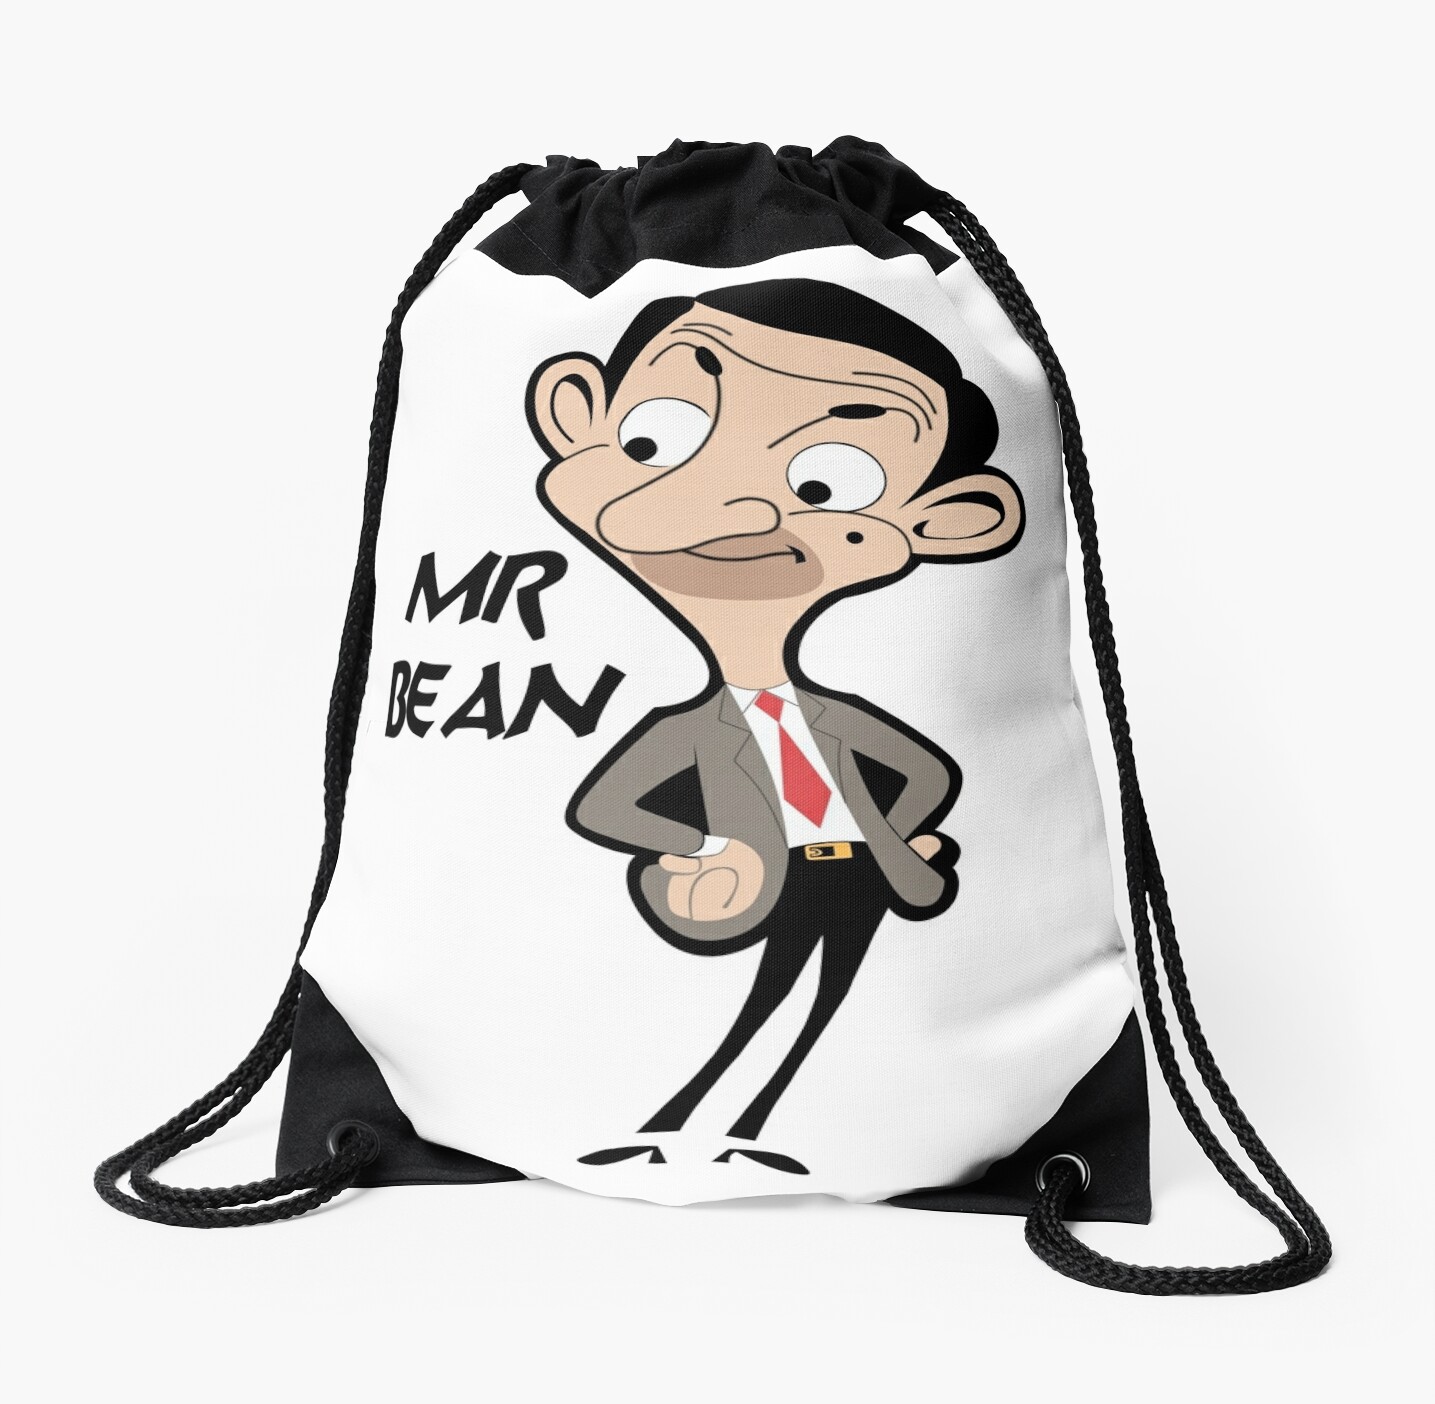 Mr bean cartoon porn